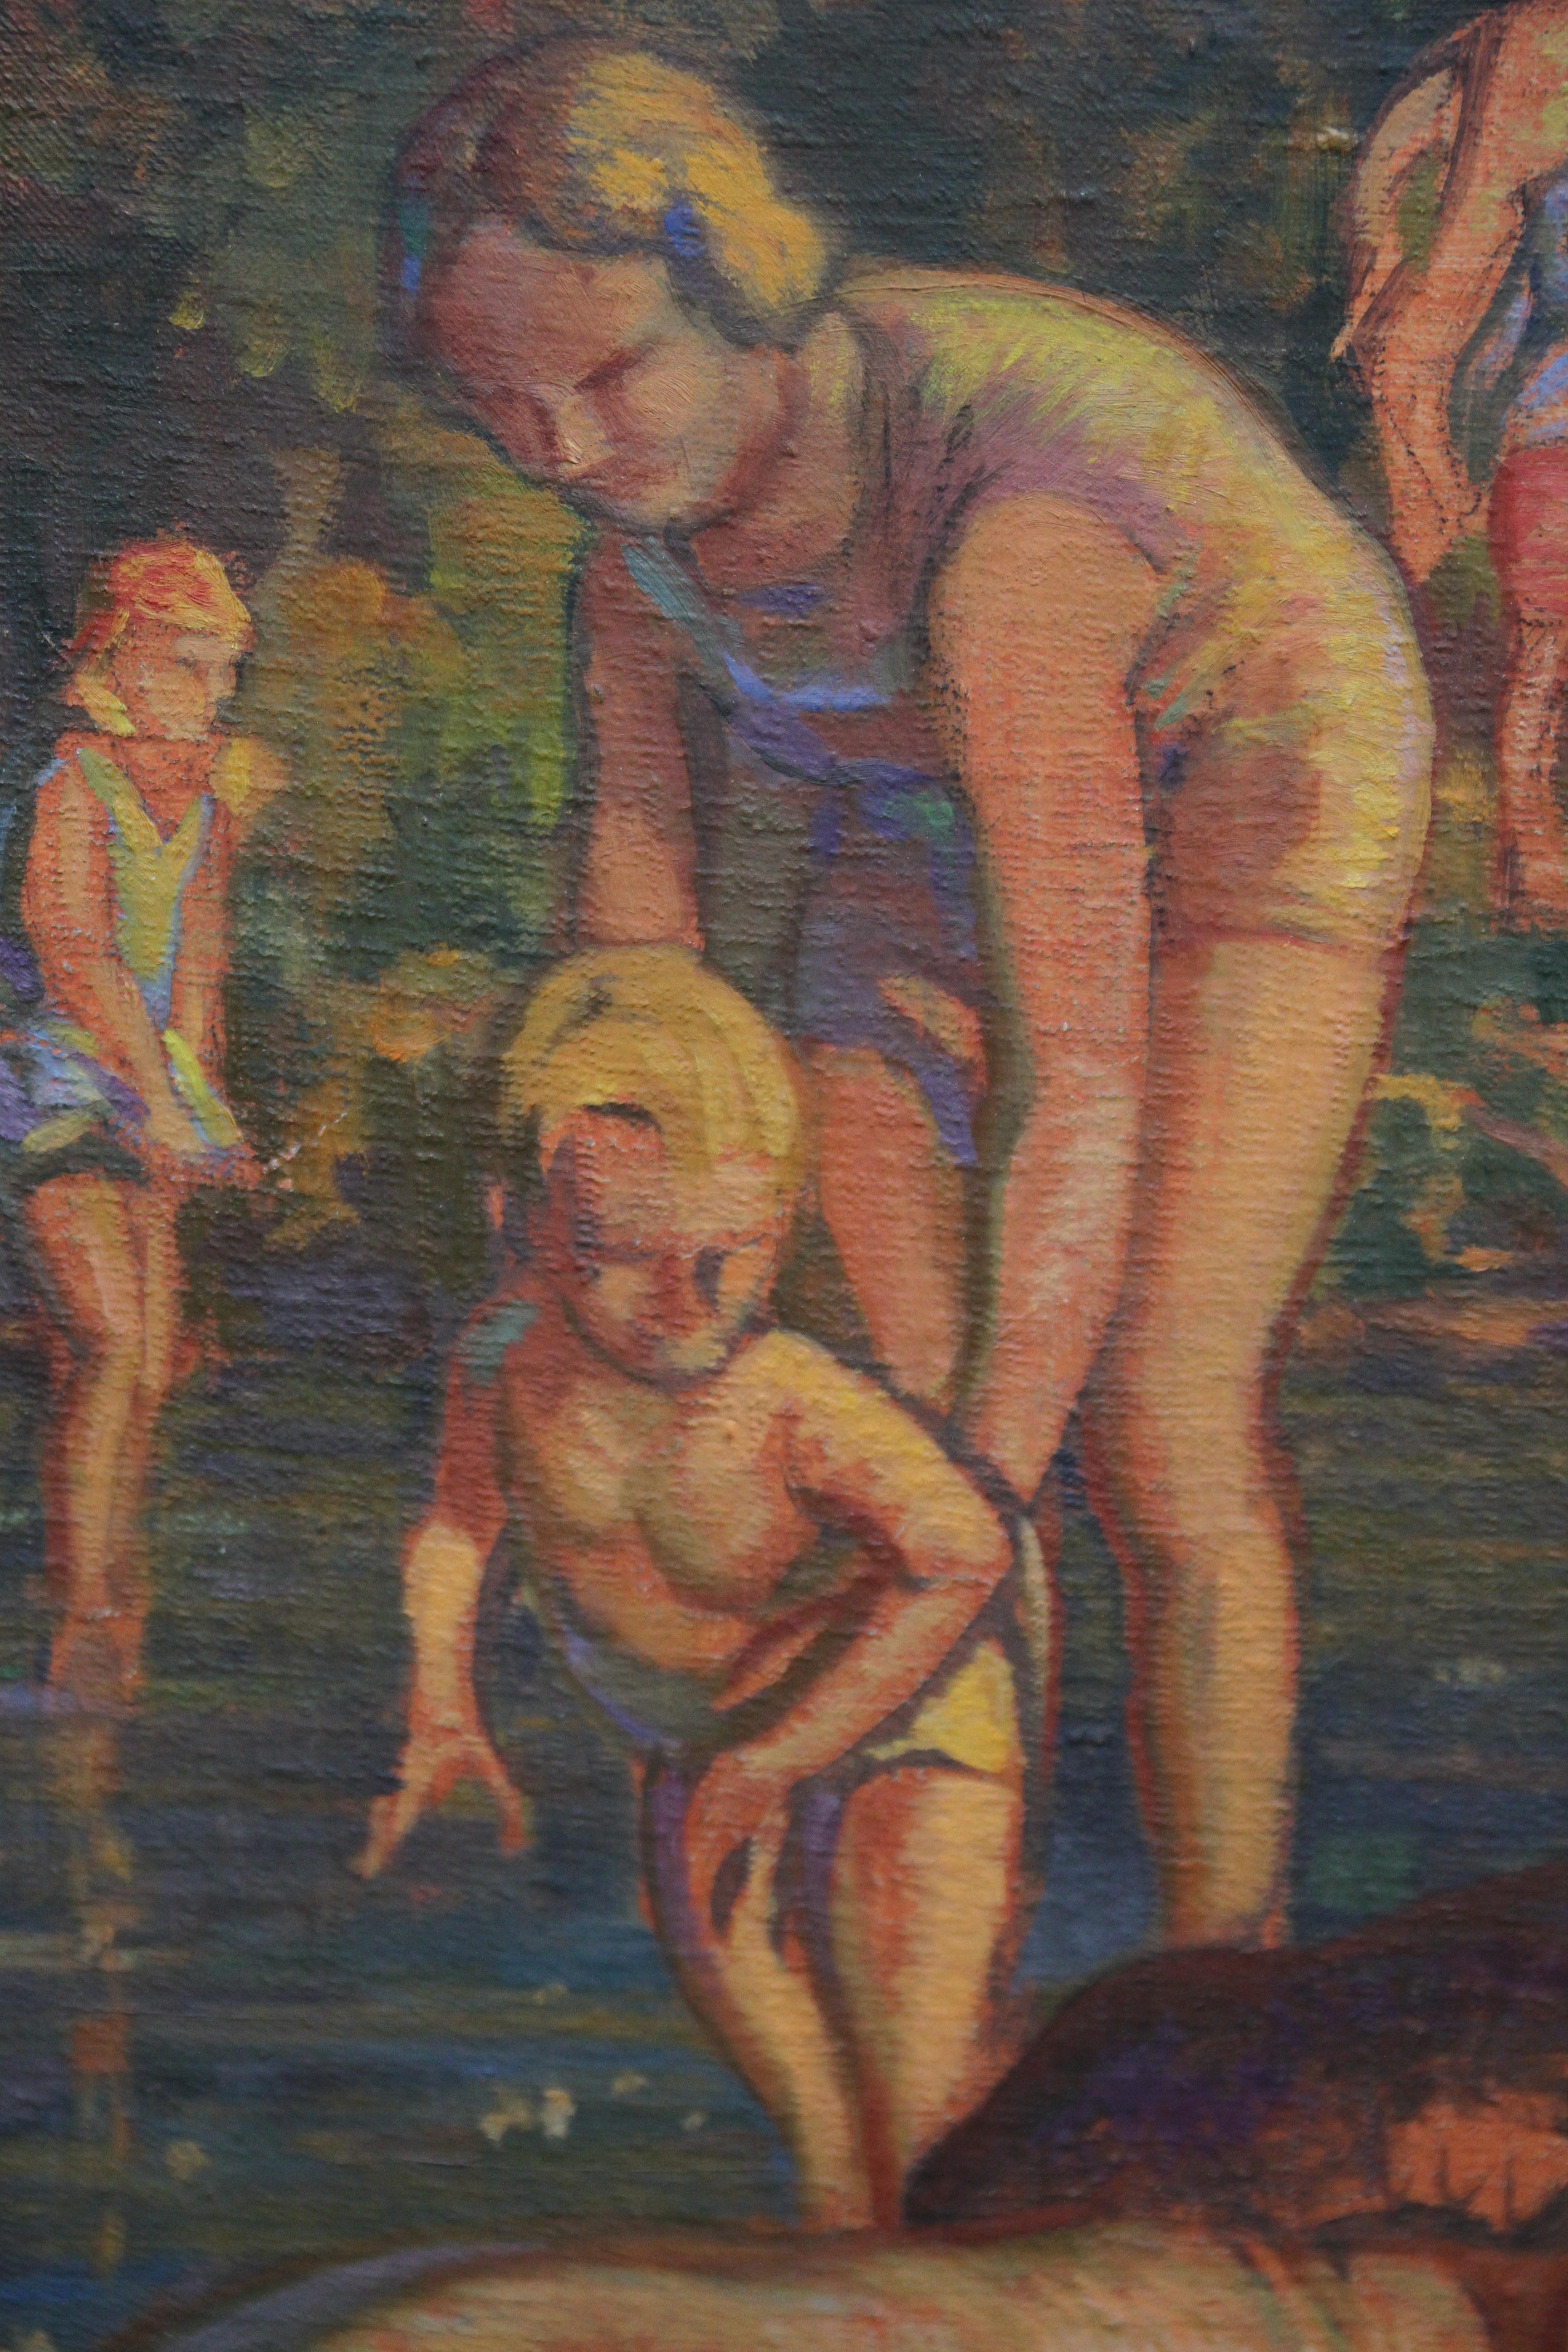 Ein faszinierendes Ölgemälde der Art Deco Slade School aus den 1930er Jahren auf Leinwand. Das Werk zeigt eine Mutter mit Kind beim Baden, umgeben von anderen Badenden. Sie hat möglicherweise religiöse Untertöne. Dieses interessante Gemälde aus der